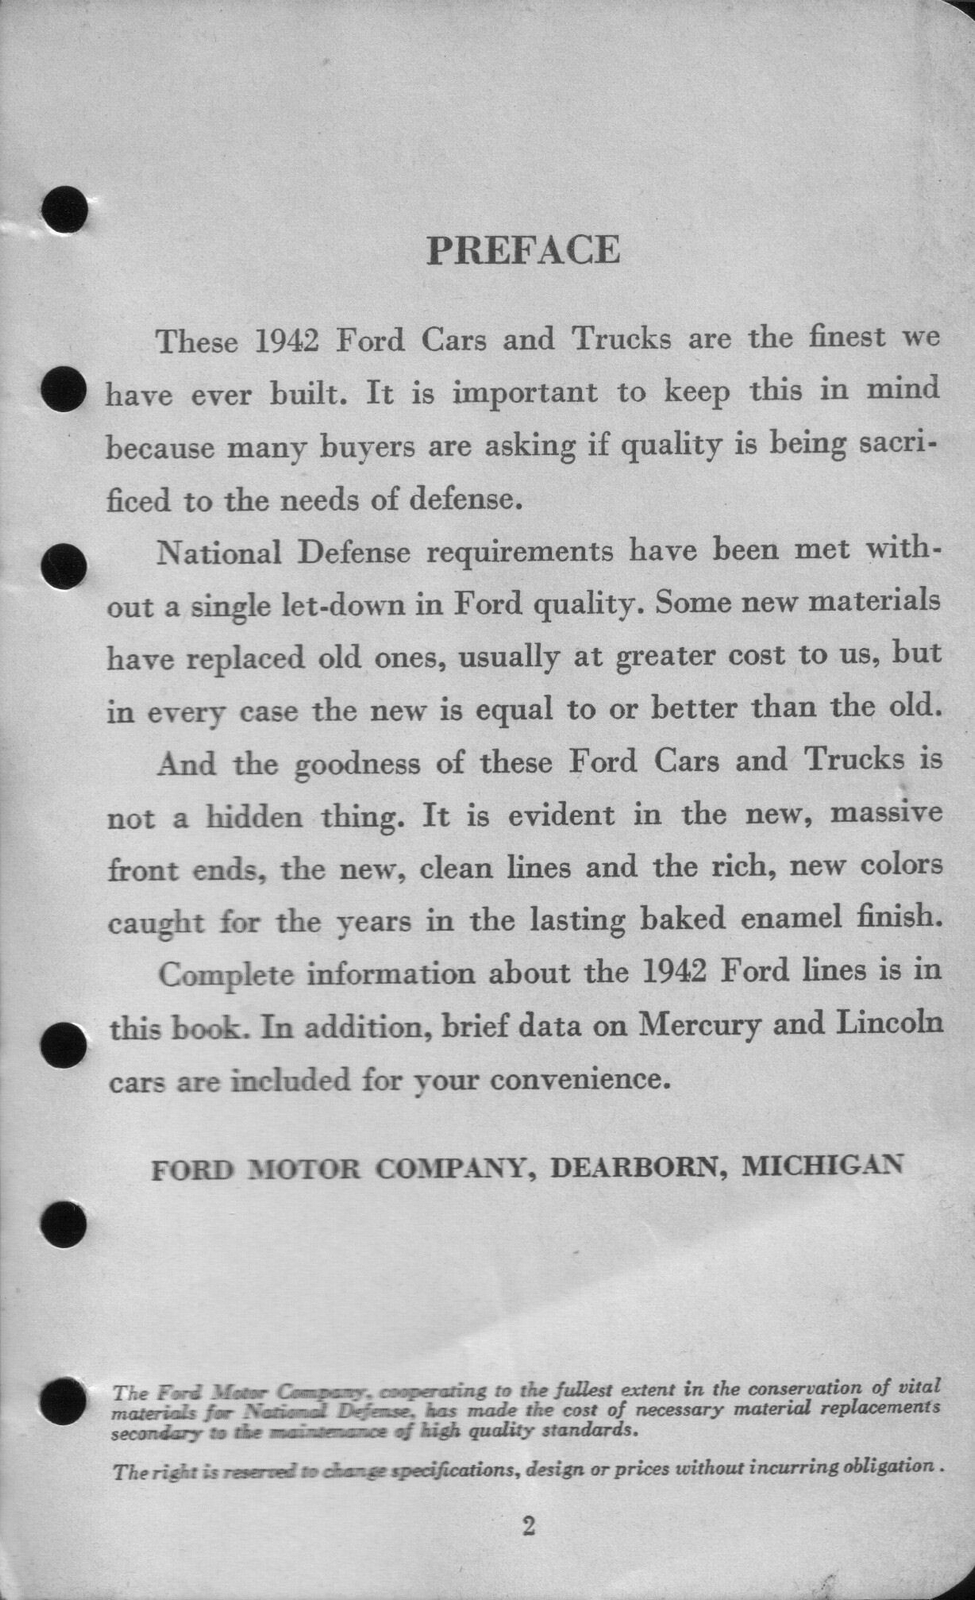 n_1942 Ford Salesmans Reference Manual-002.jpg